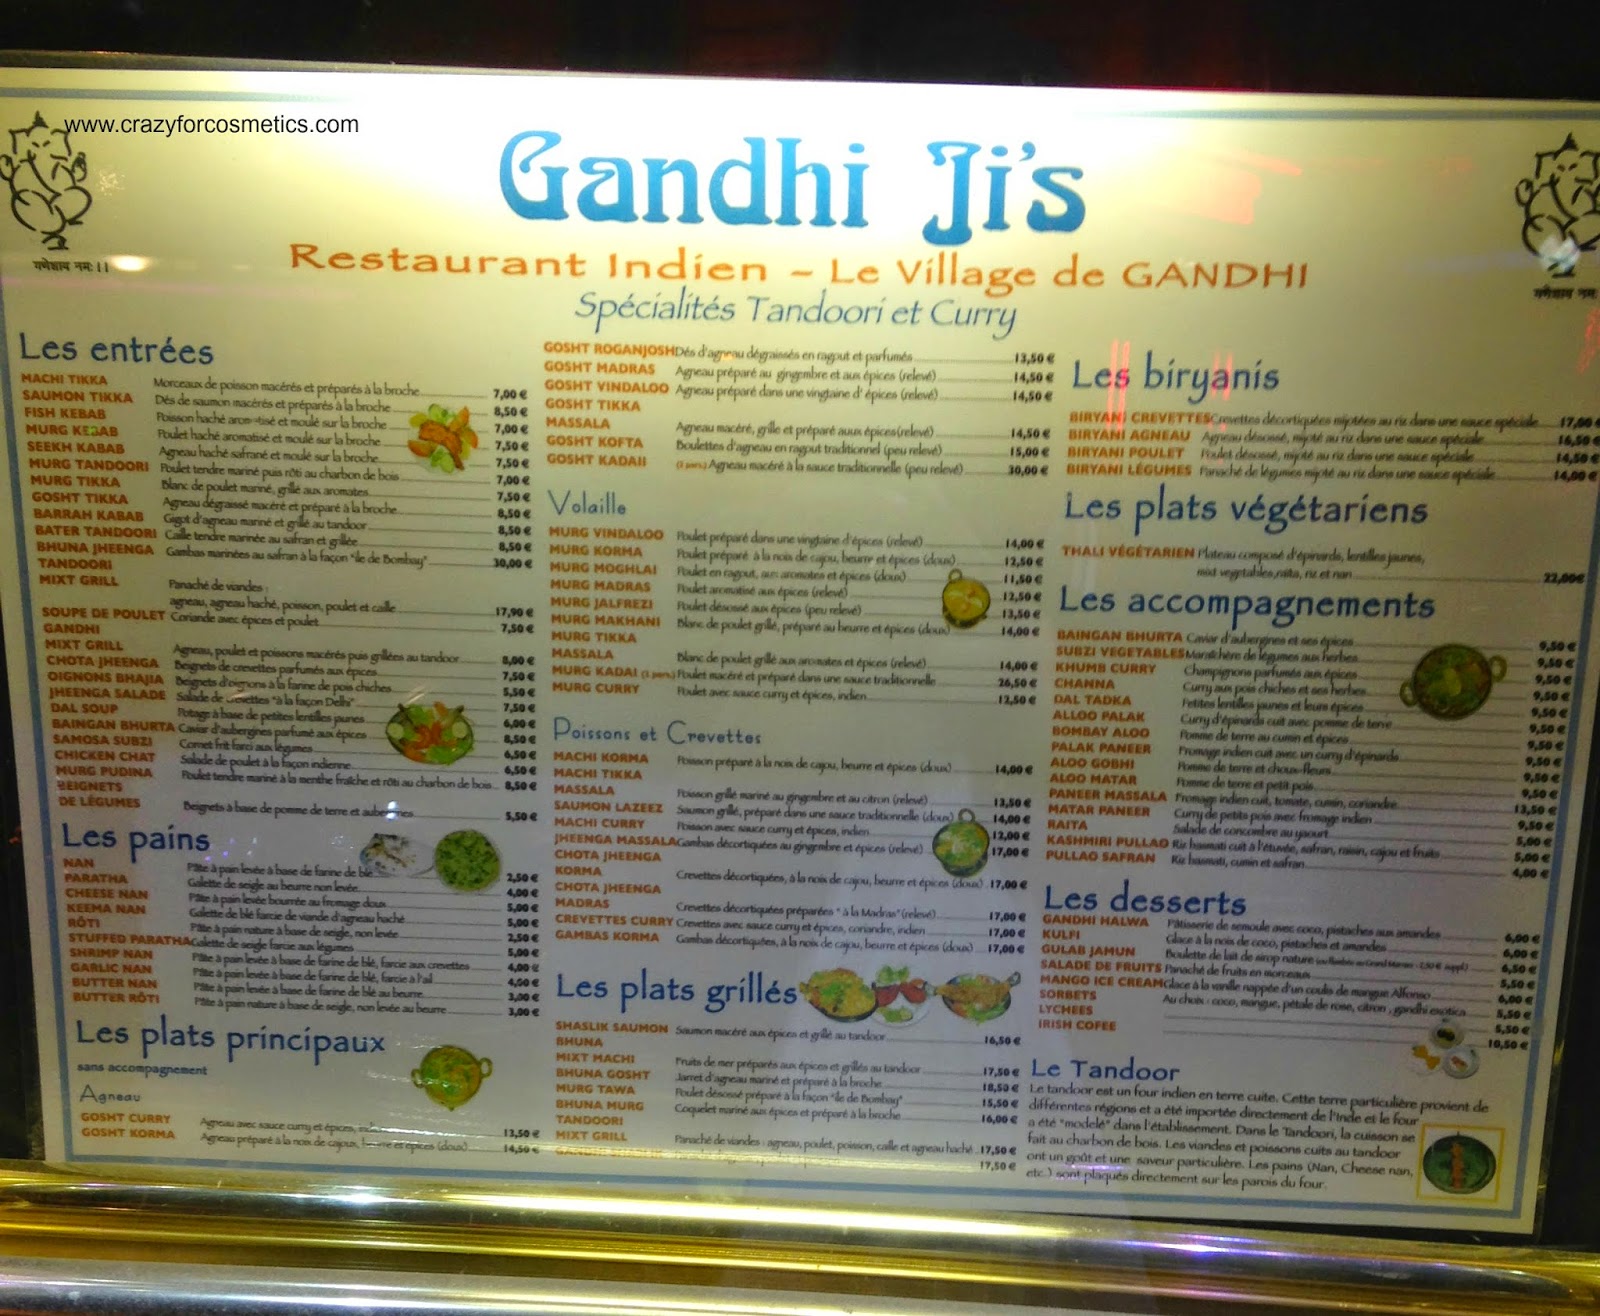 Indian Restaurants in Paris